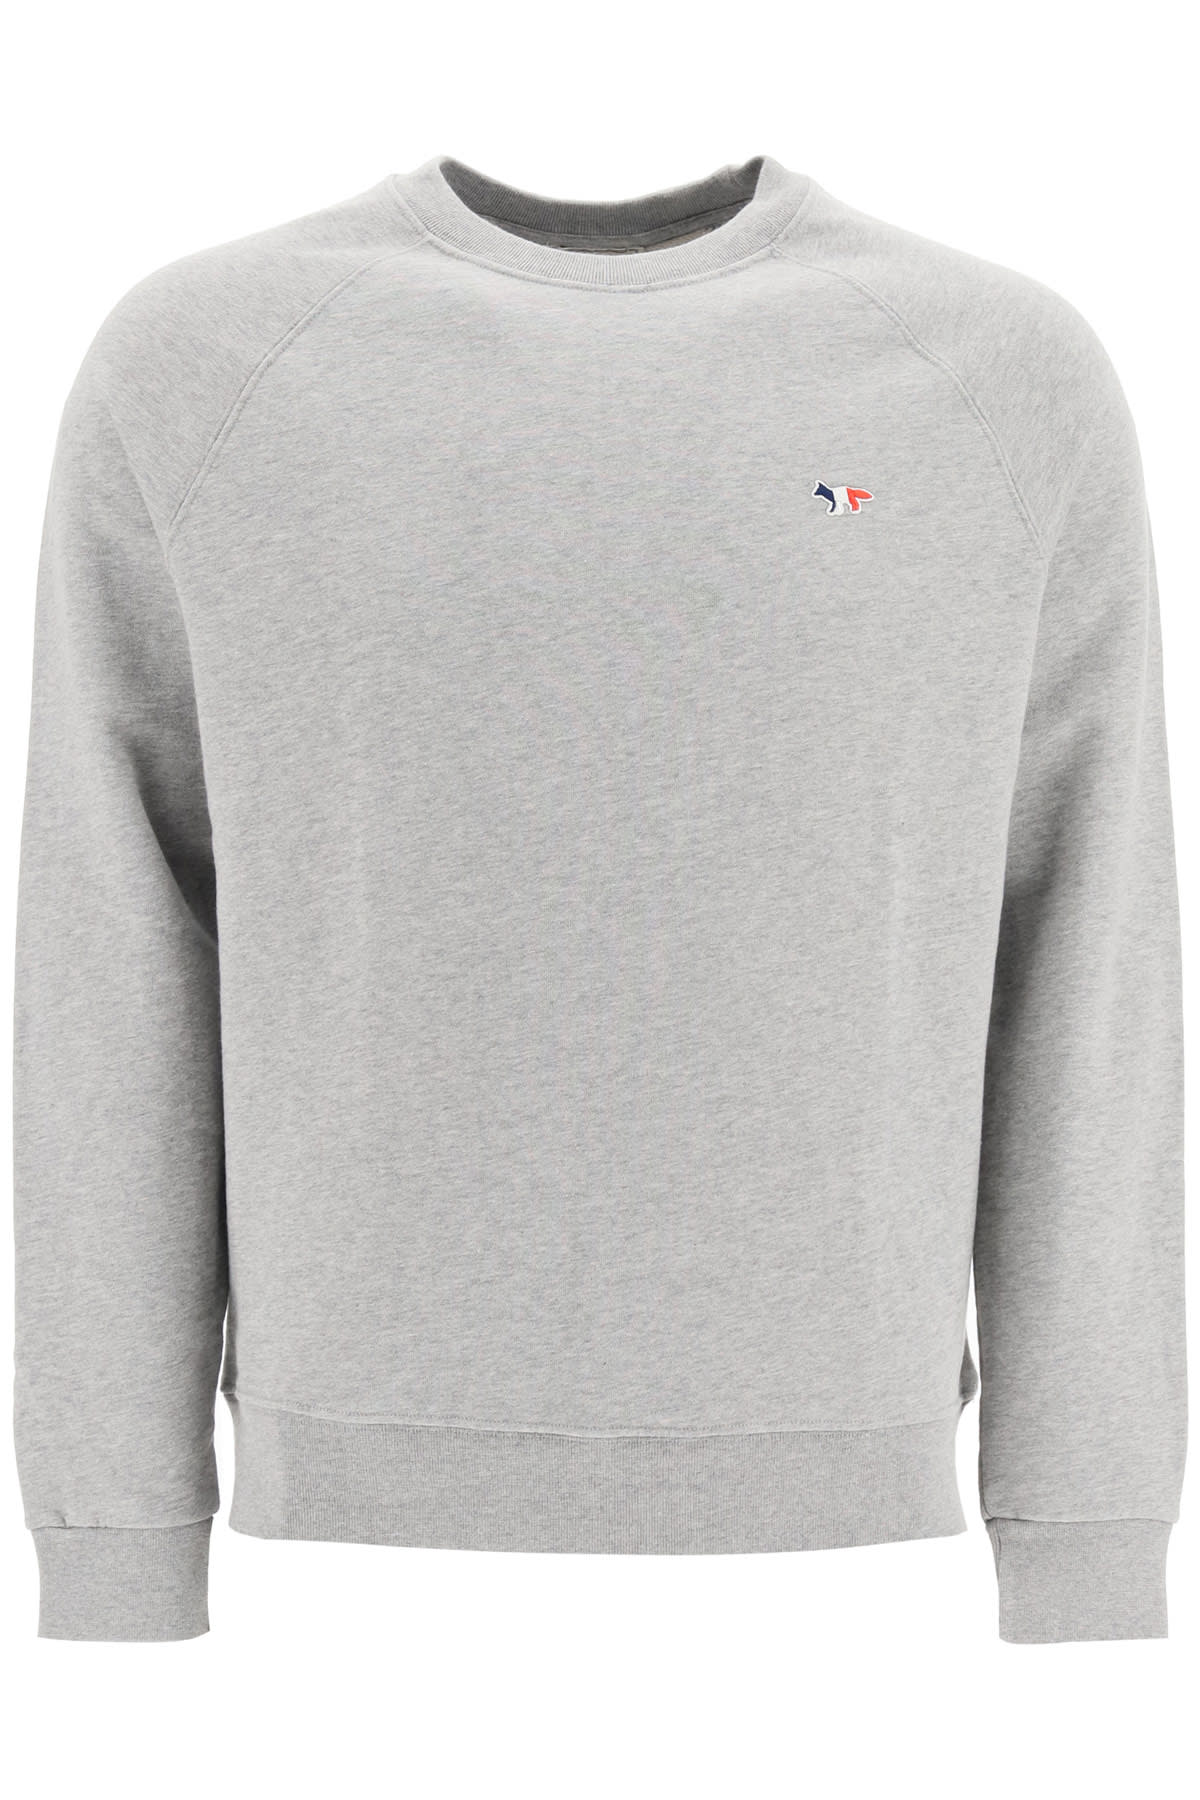 Shop Maison Kitsuné Tricolor Fox Patch Sweatshirt In Grey Melange (grey)